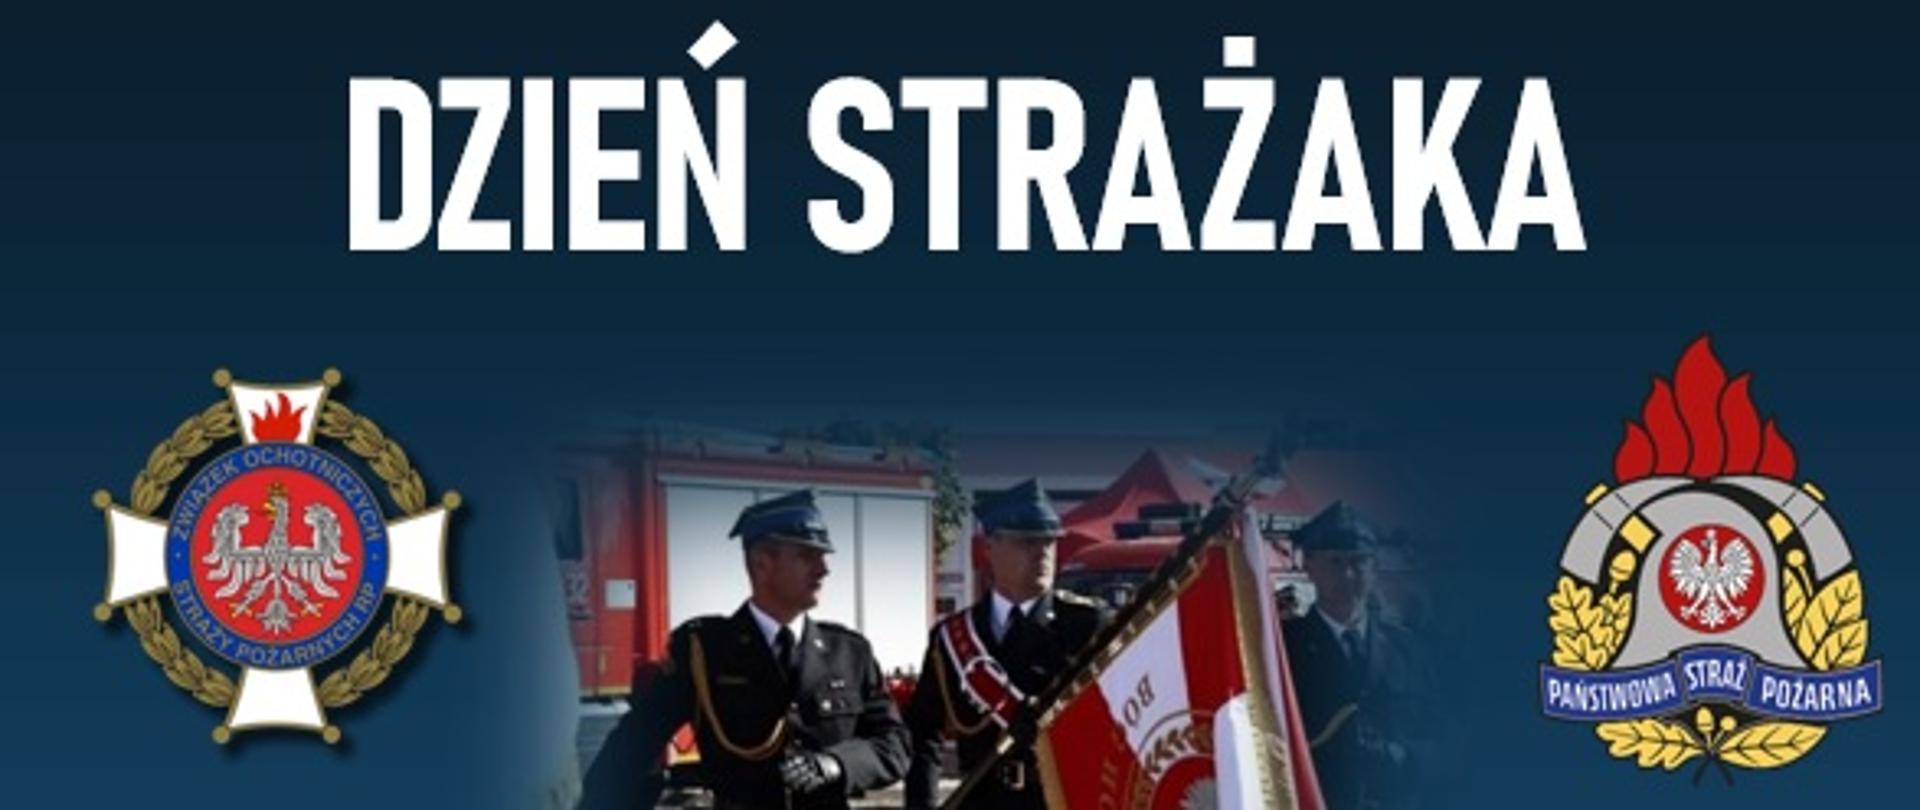 Plakat informujący o odbywających się 02 czerwca 2023 r. powiatowych obchodów dnia strażaka. U góry plakatu znajdują się logo PSP oraz OSP. Po środku przedstawione jest zdjęcie maszerujących strażaków ze sztandarem. Tło plakatu jest granatowe.